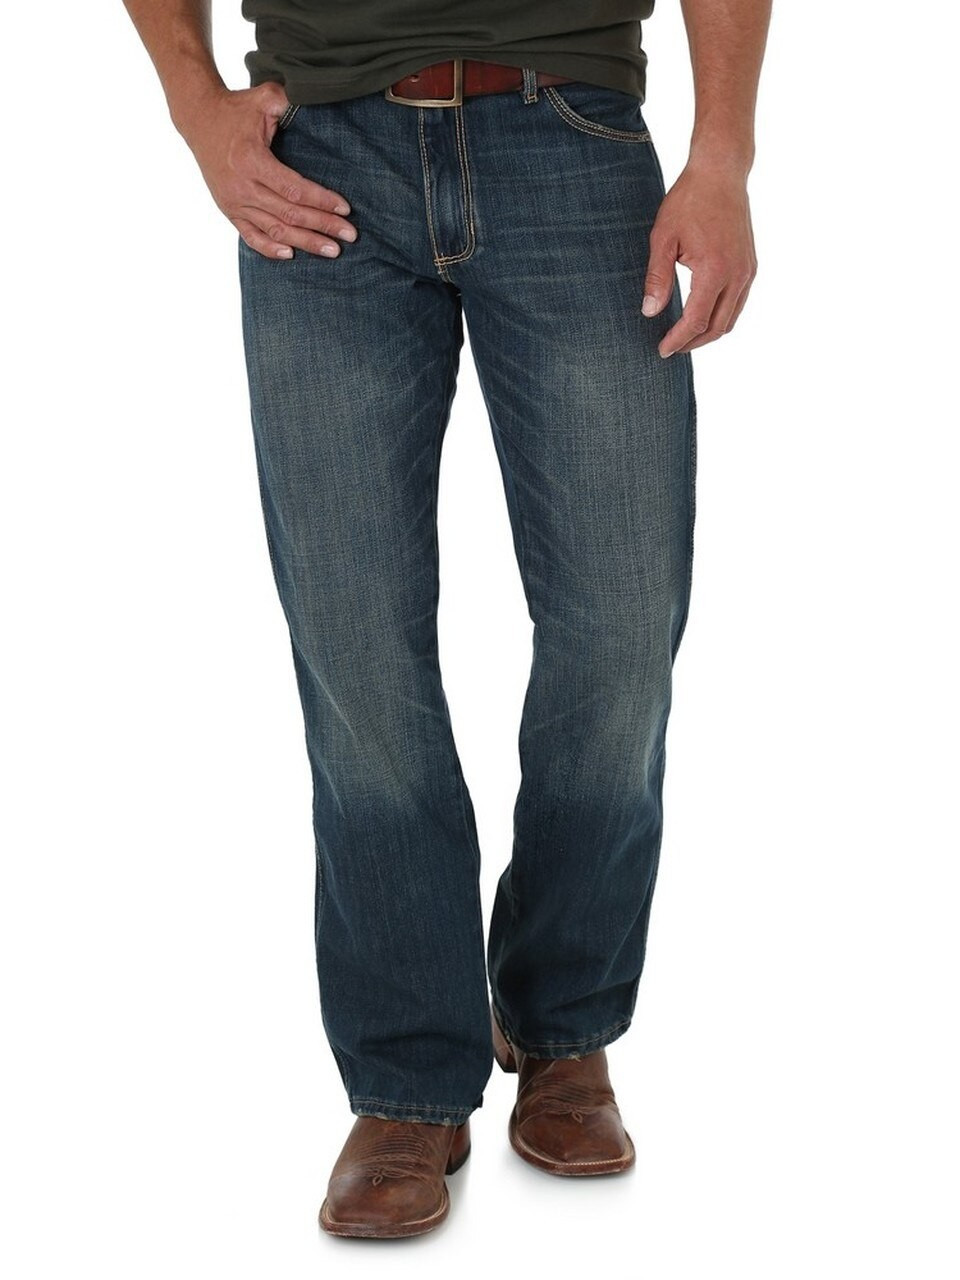 men's wrangler boot cut jeans